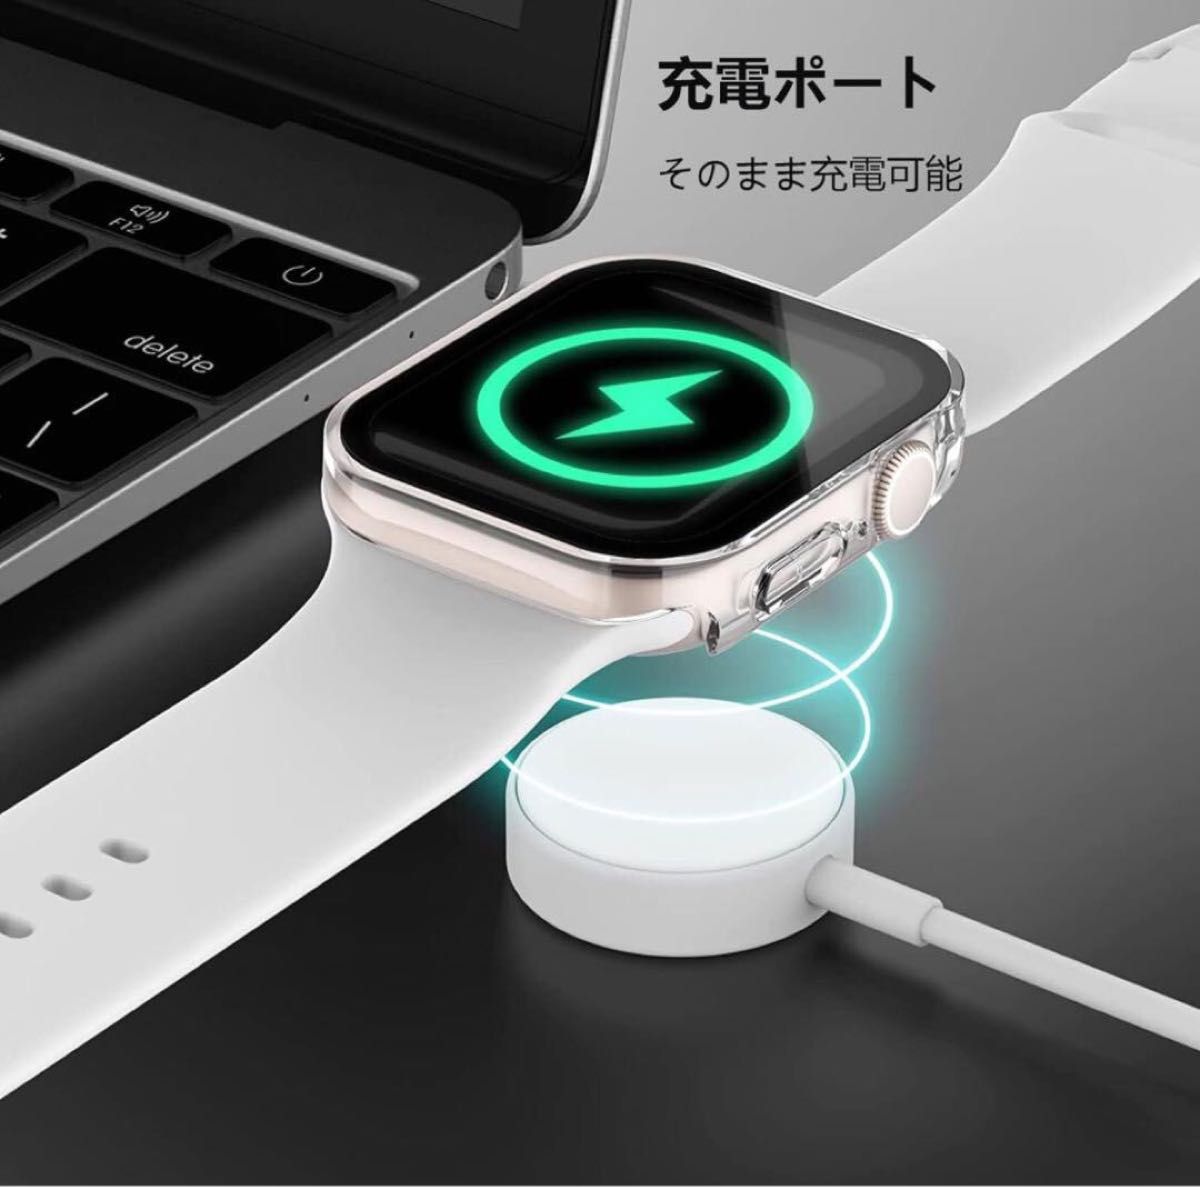 【今話題の】Apple Watch カバー 44mm 対応 保護ケース クリア